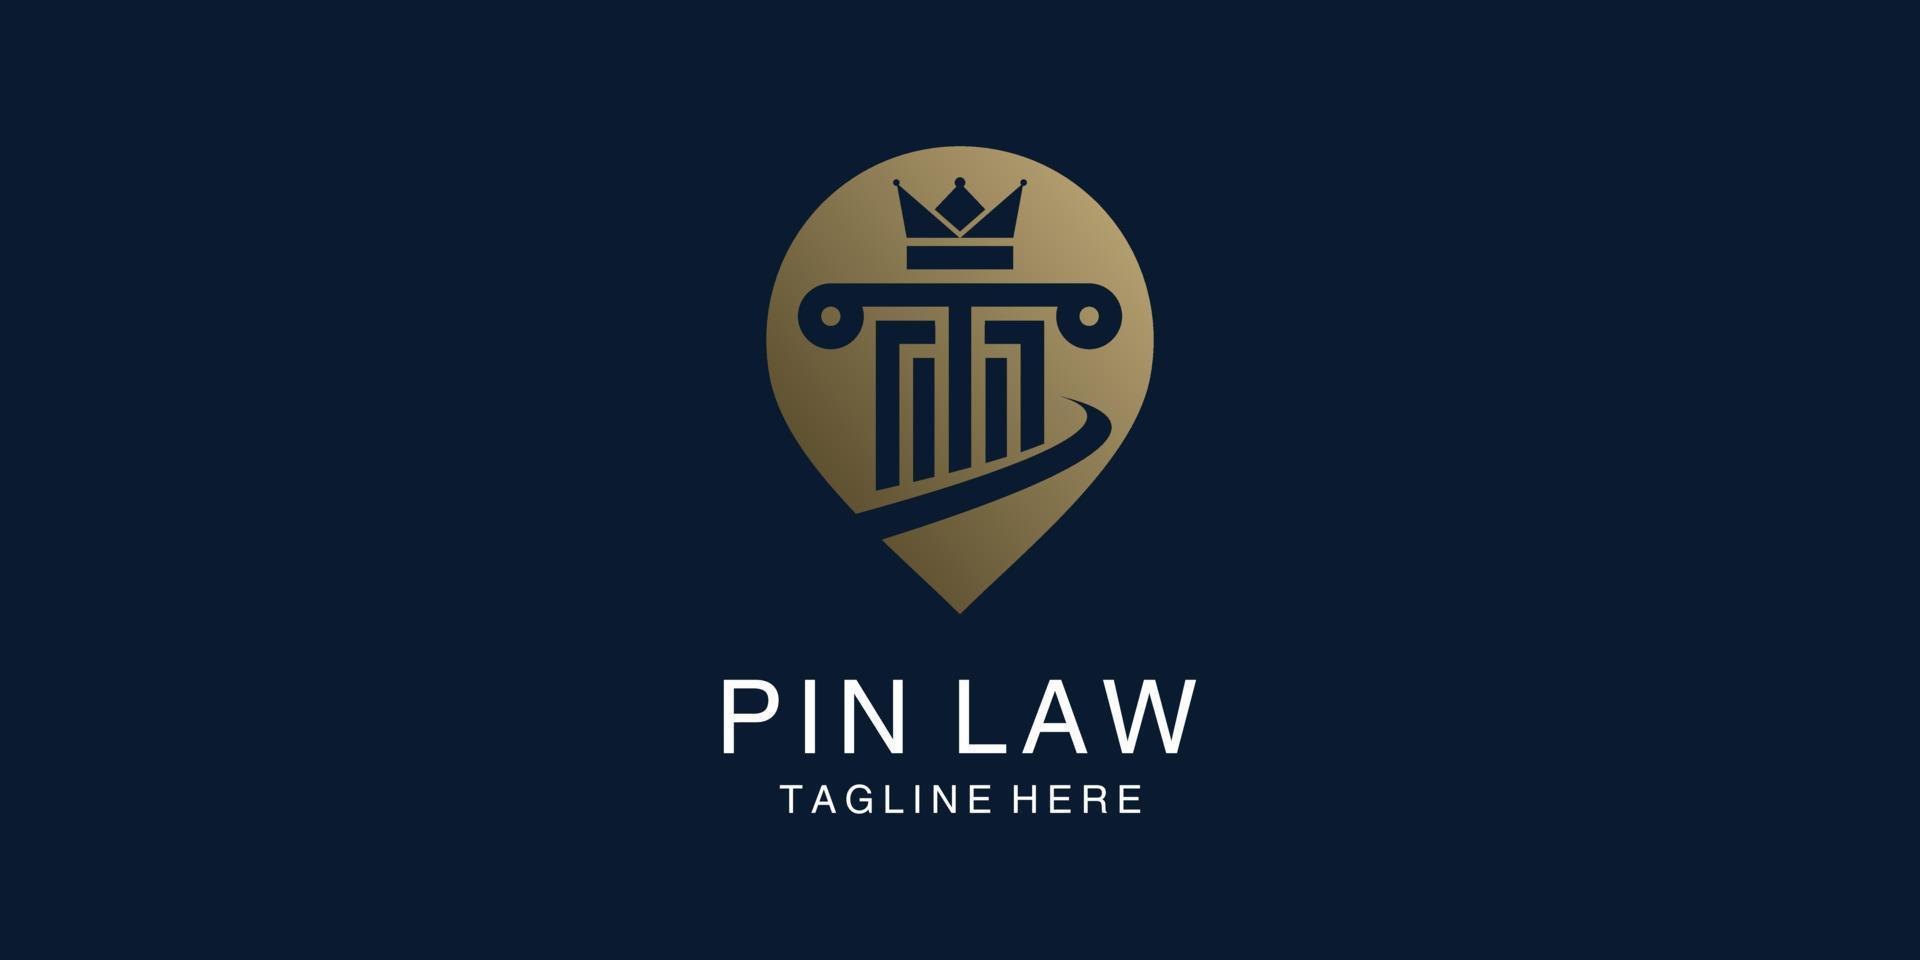 vetor de conceito de design de logotipo de lei com estilo de localização de pinos, advogado, escritório de advocacia, justiça